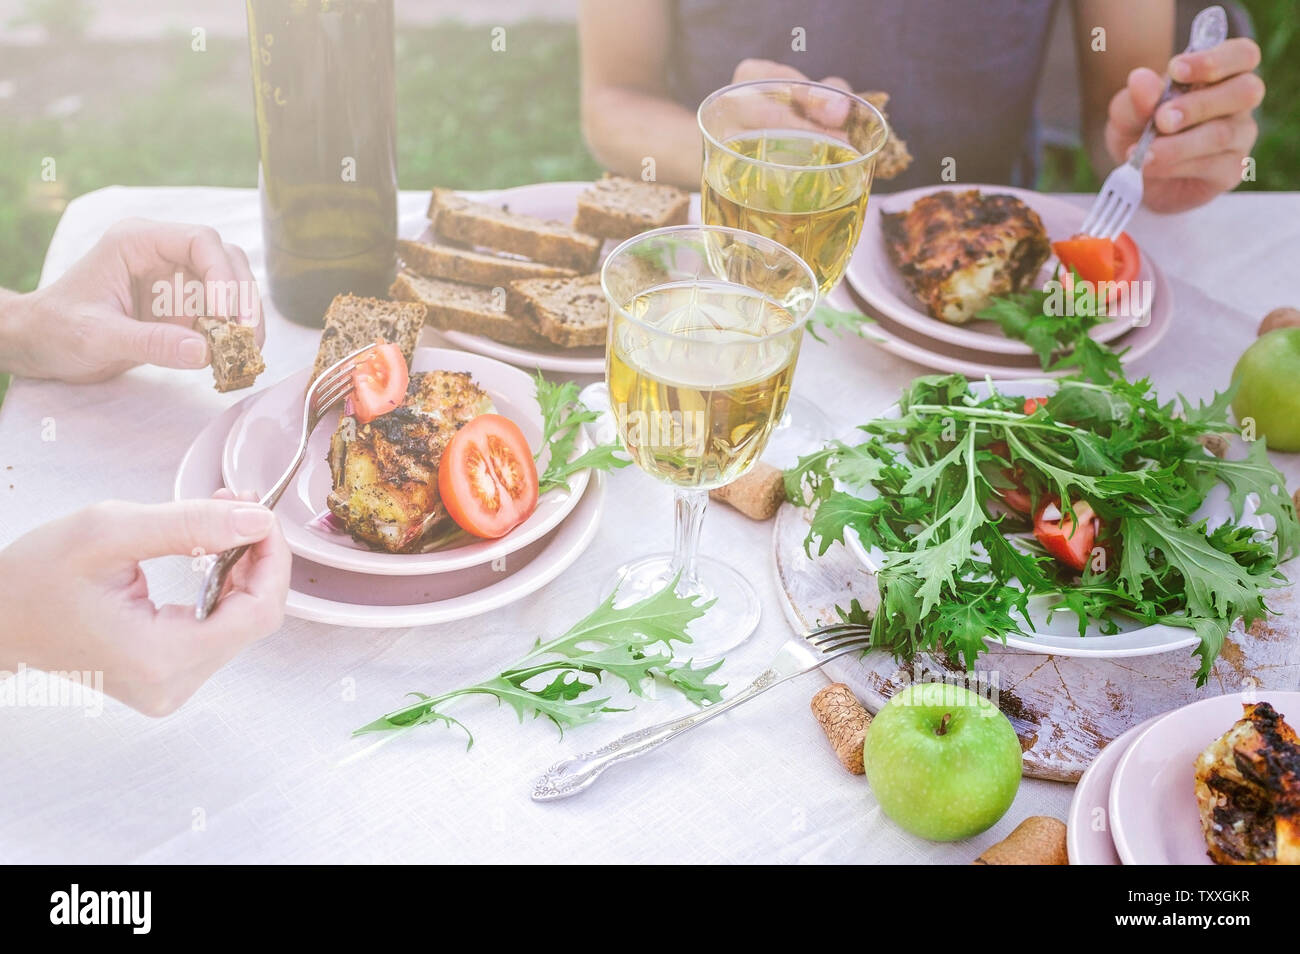 Les gens mangent dans le jardin à la table. Le dîner avec vin concept dans l'air frais. Poissons de mer grillés et des salades de légumes et d'herbes. Méditerranée Banque D'Images